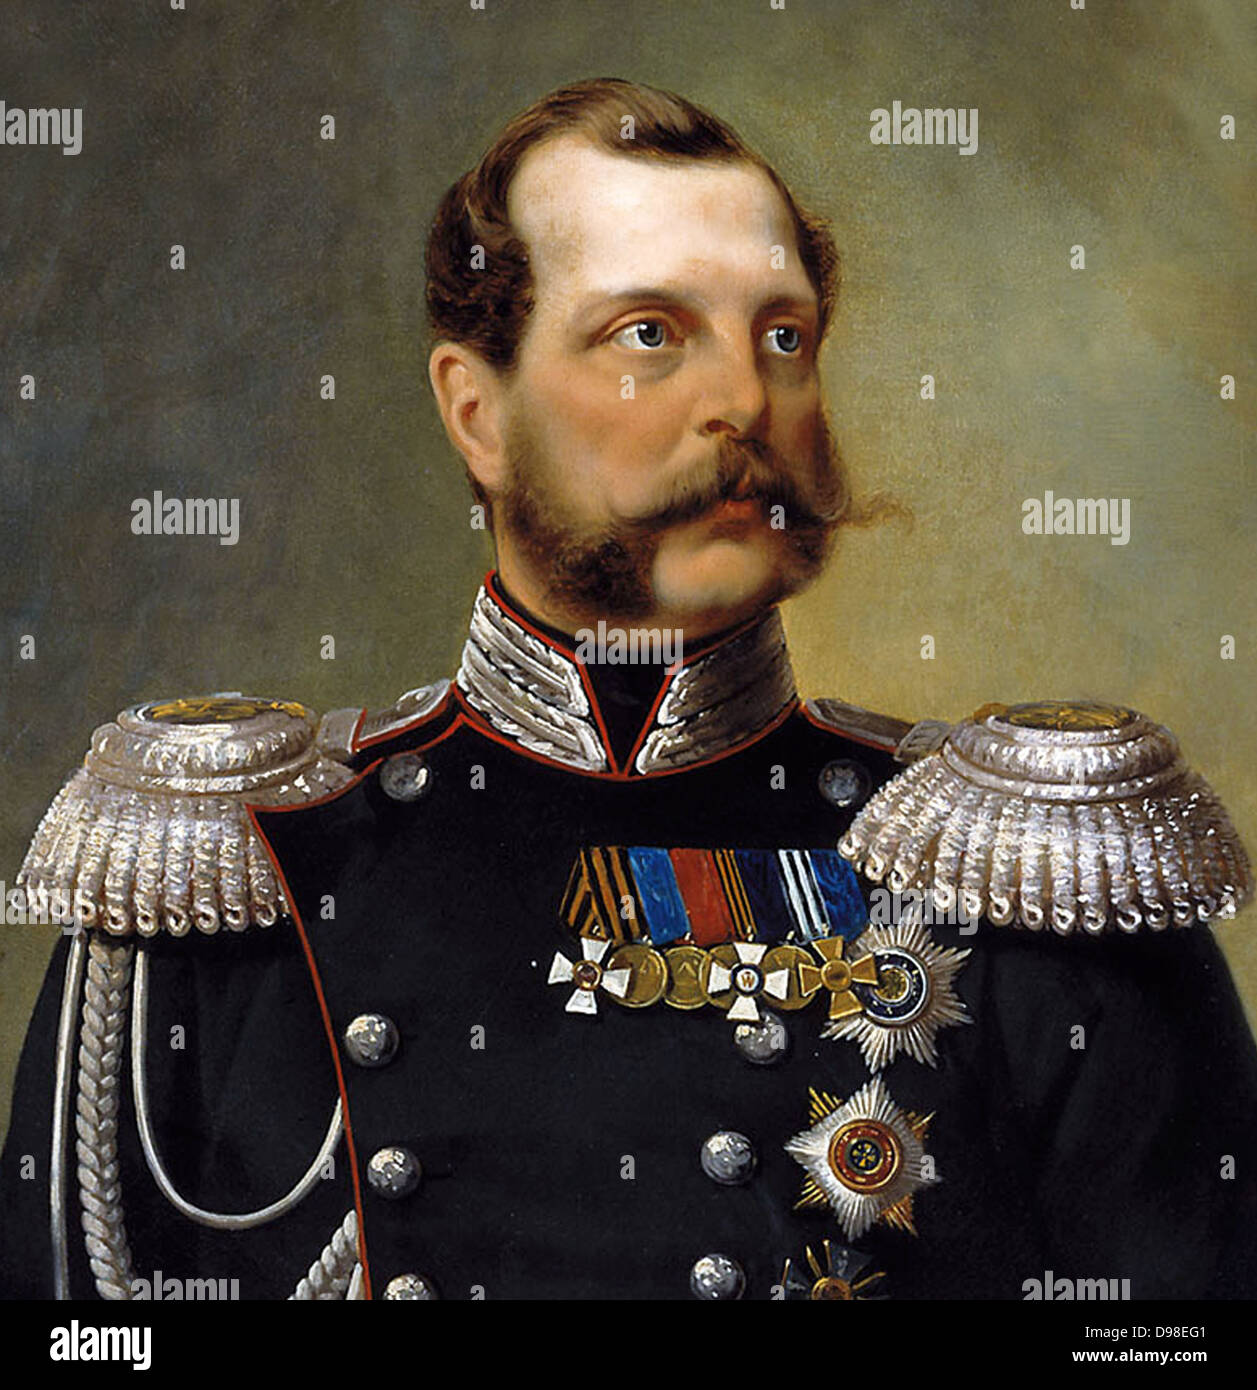 Alexander II 1818 - 1881. Bekannt als Alexander der Befreier war der Kaiser, oder Zaren, des Russischen Reiches vom 3. März 1855 bis zu seiner Ermordung im Jahr 1881. Stockfoto